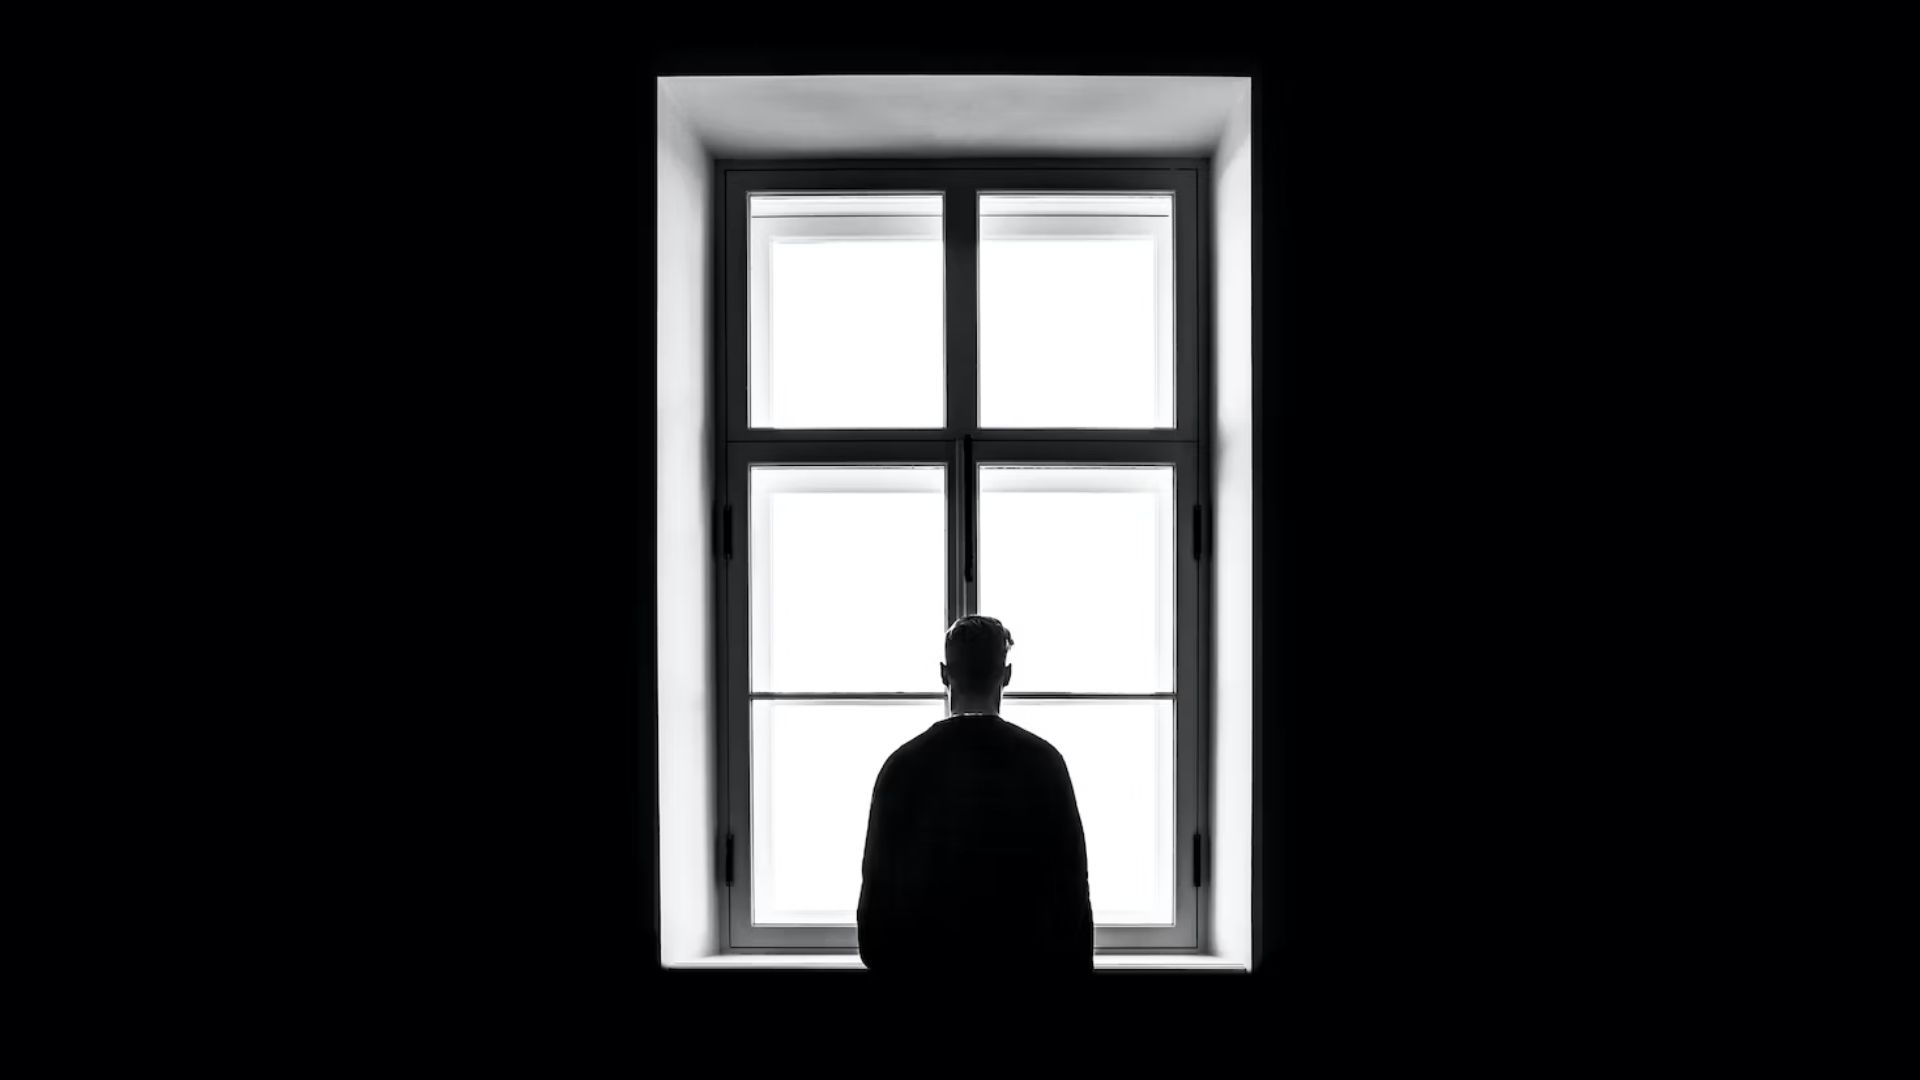 Una potente immagine in bianco e nero cattura il profilo di una persona in piedi davanti a una finestra luminosa.